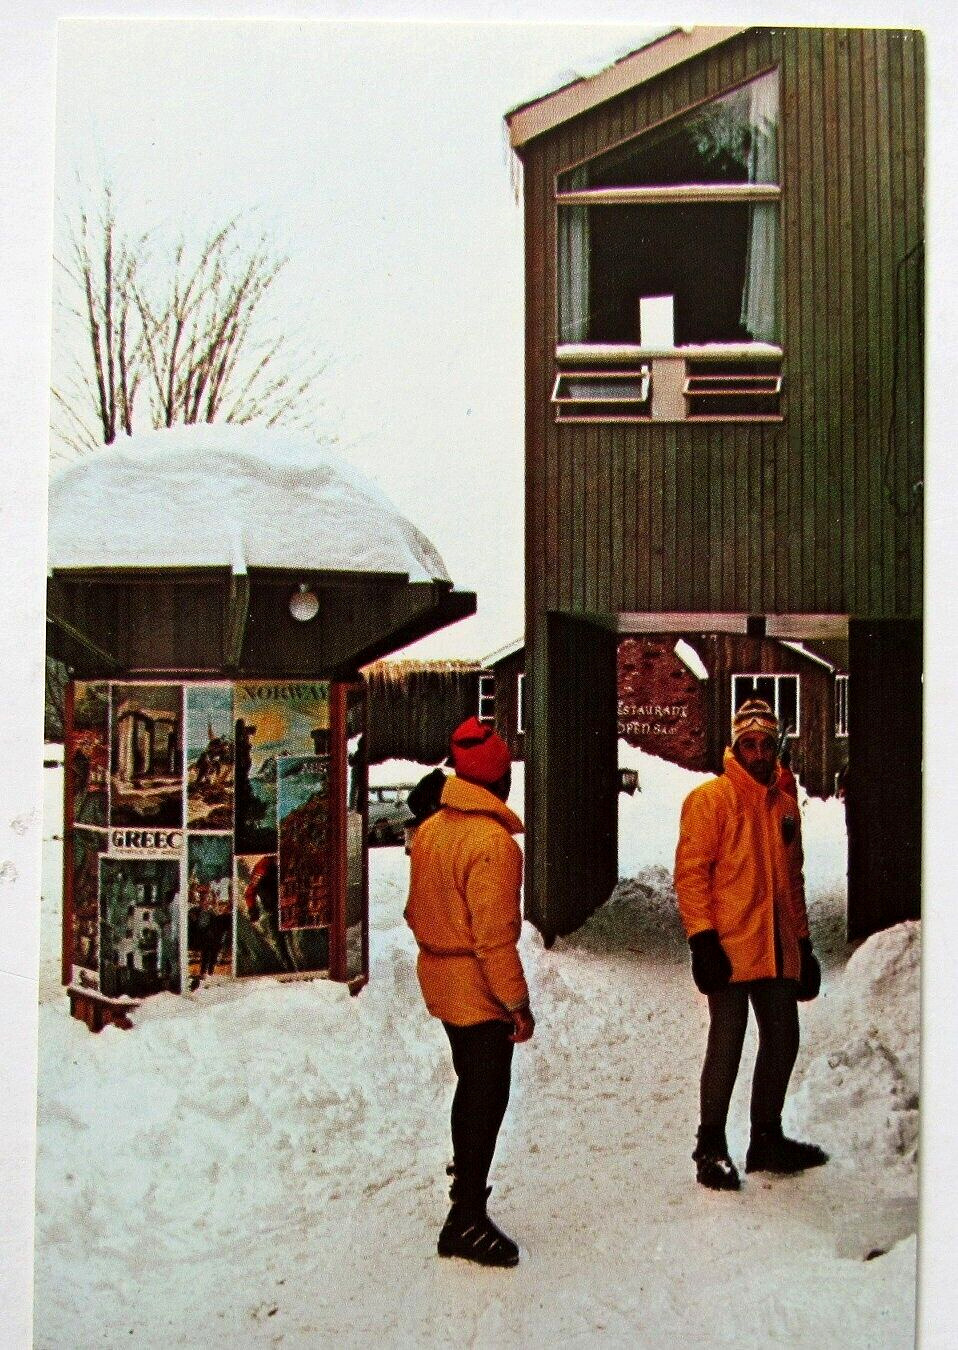 Jeffersonville Vermont Madonna Village Winter Lodging Ski Restaurants Postcard